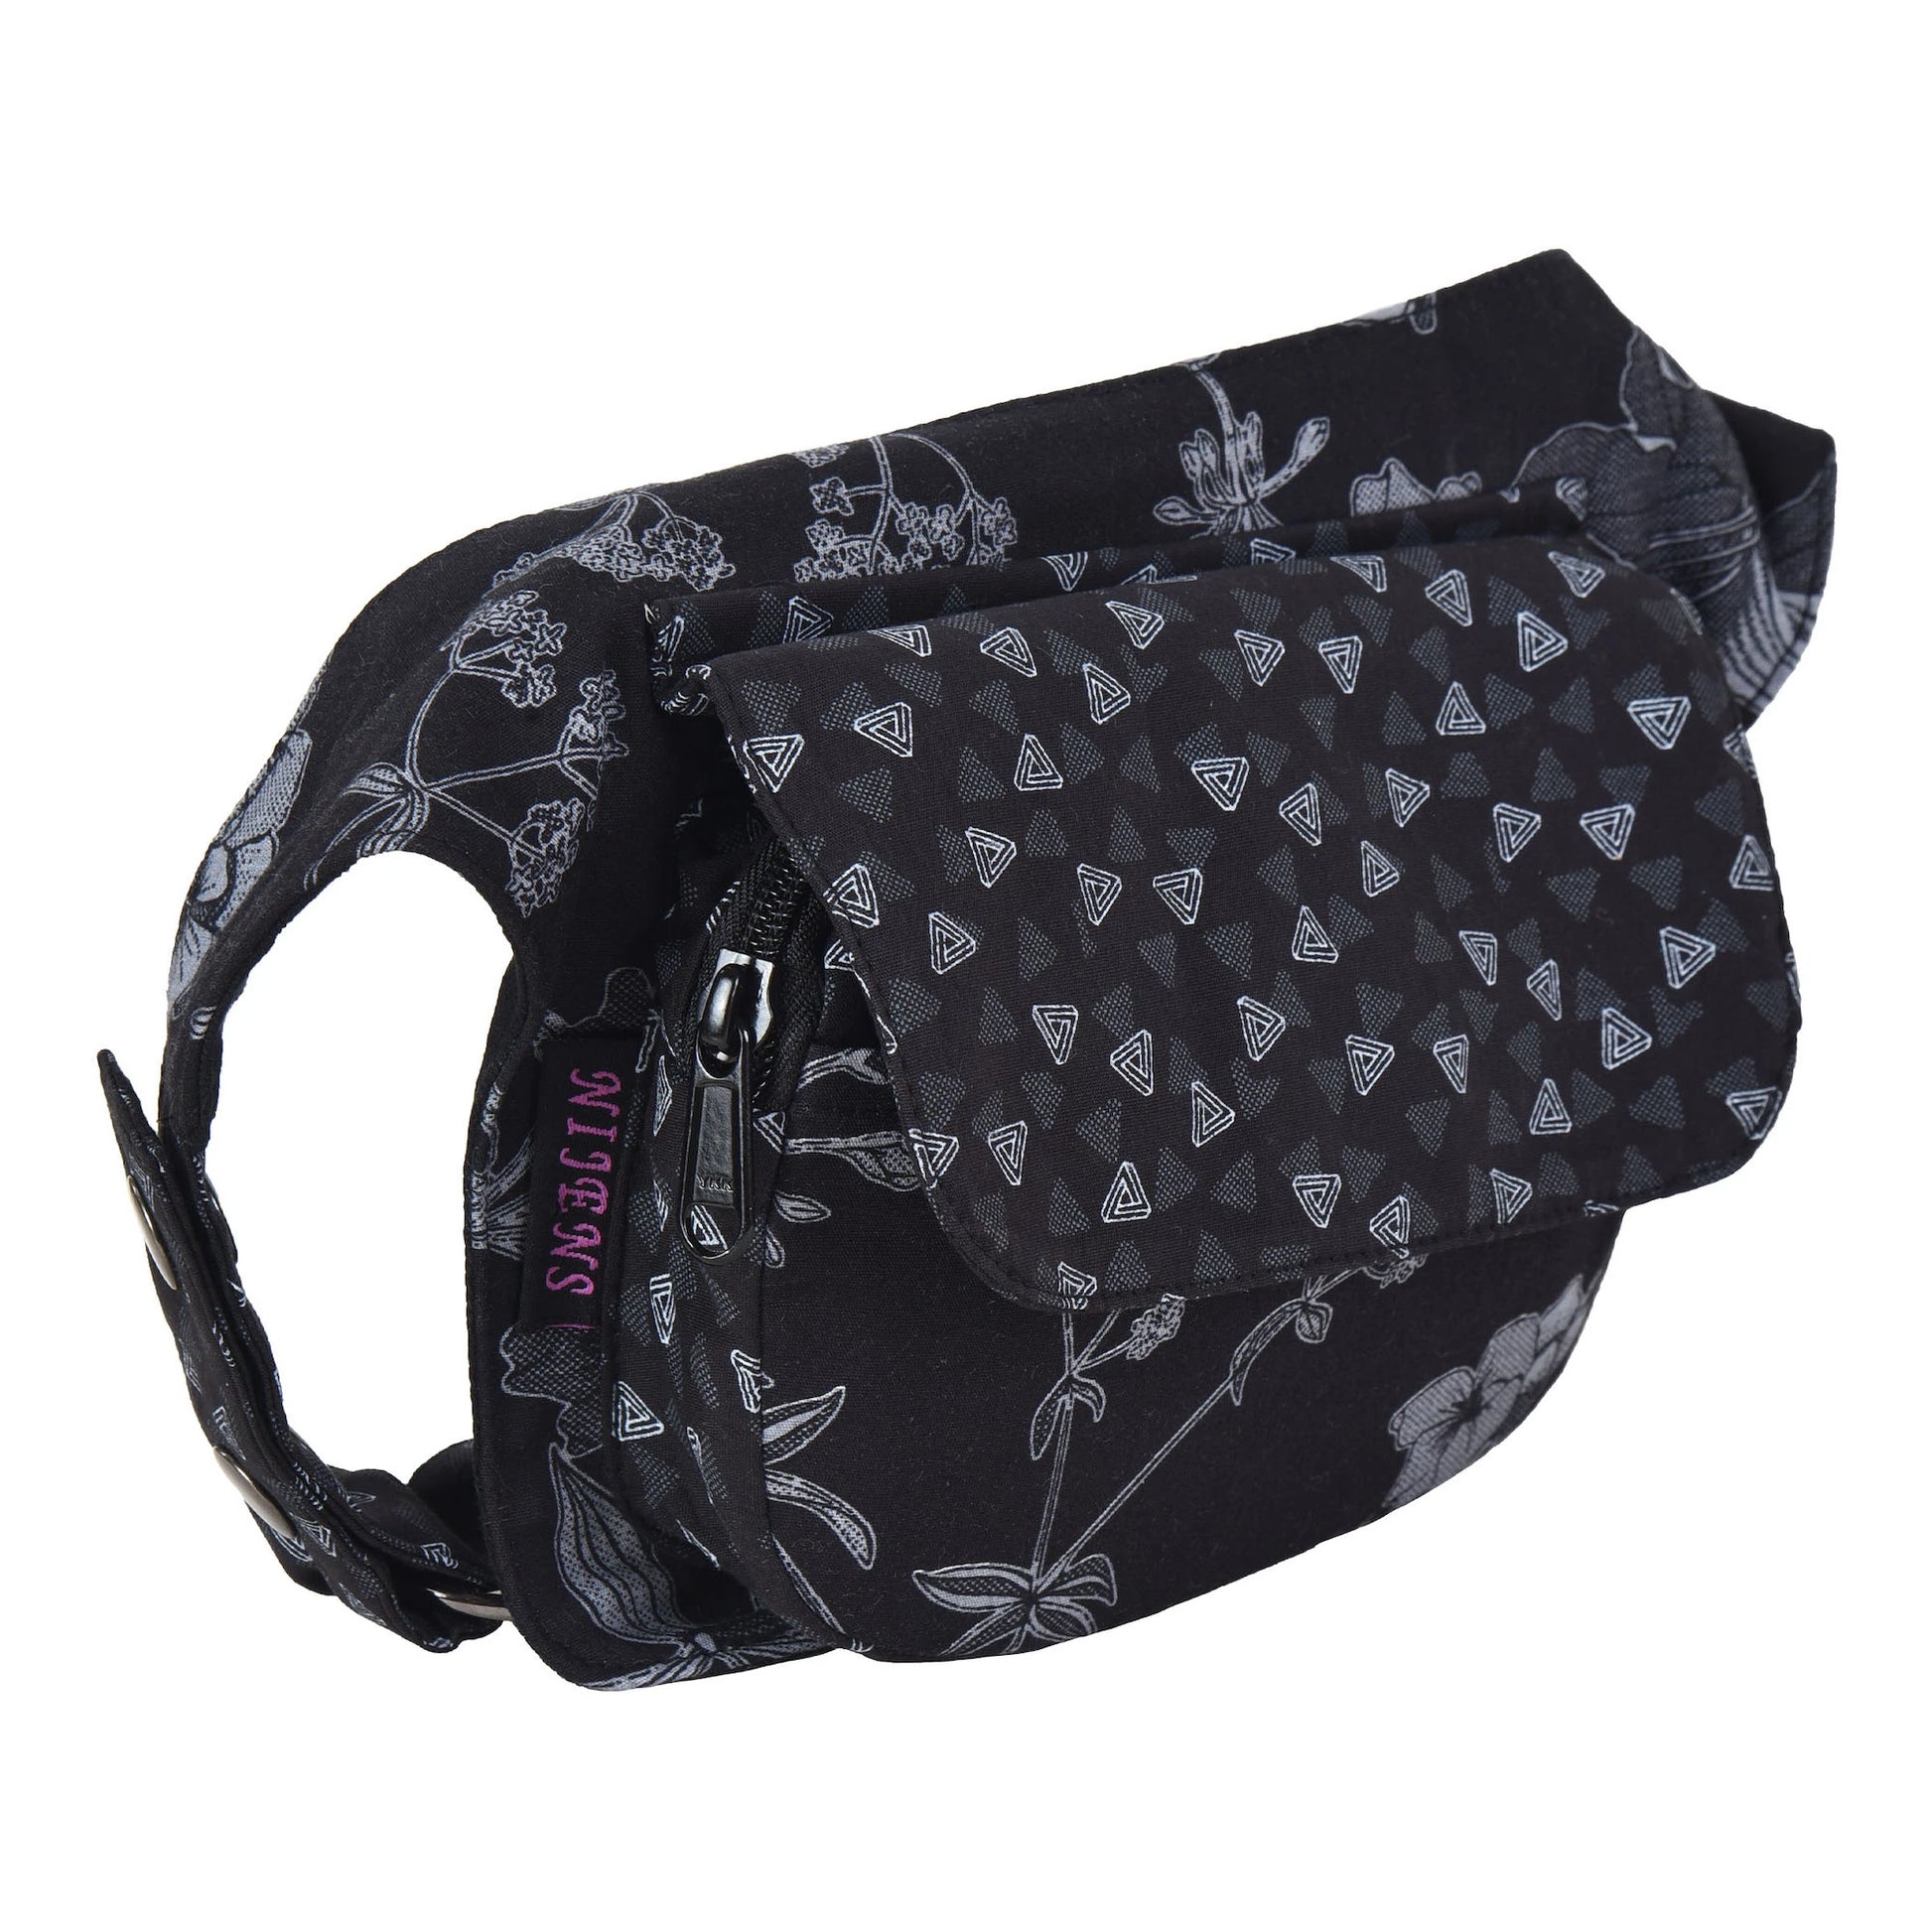 Kleine Schwarze Bauchtasche aus Baumwolle mit Lilien und Dreiecks Motiven. Der Taschengurt ist größenverstellbar.